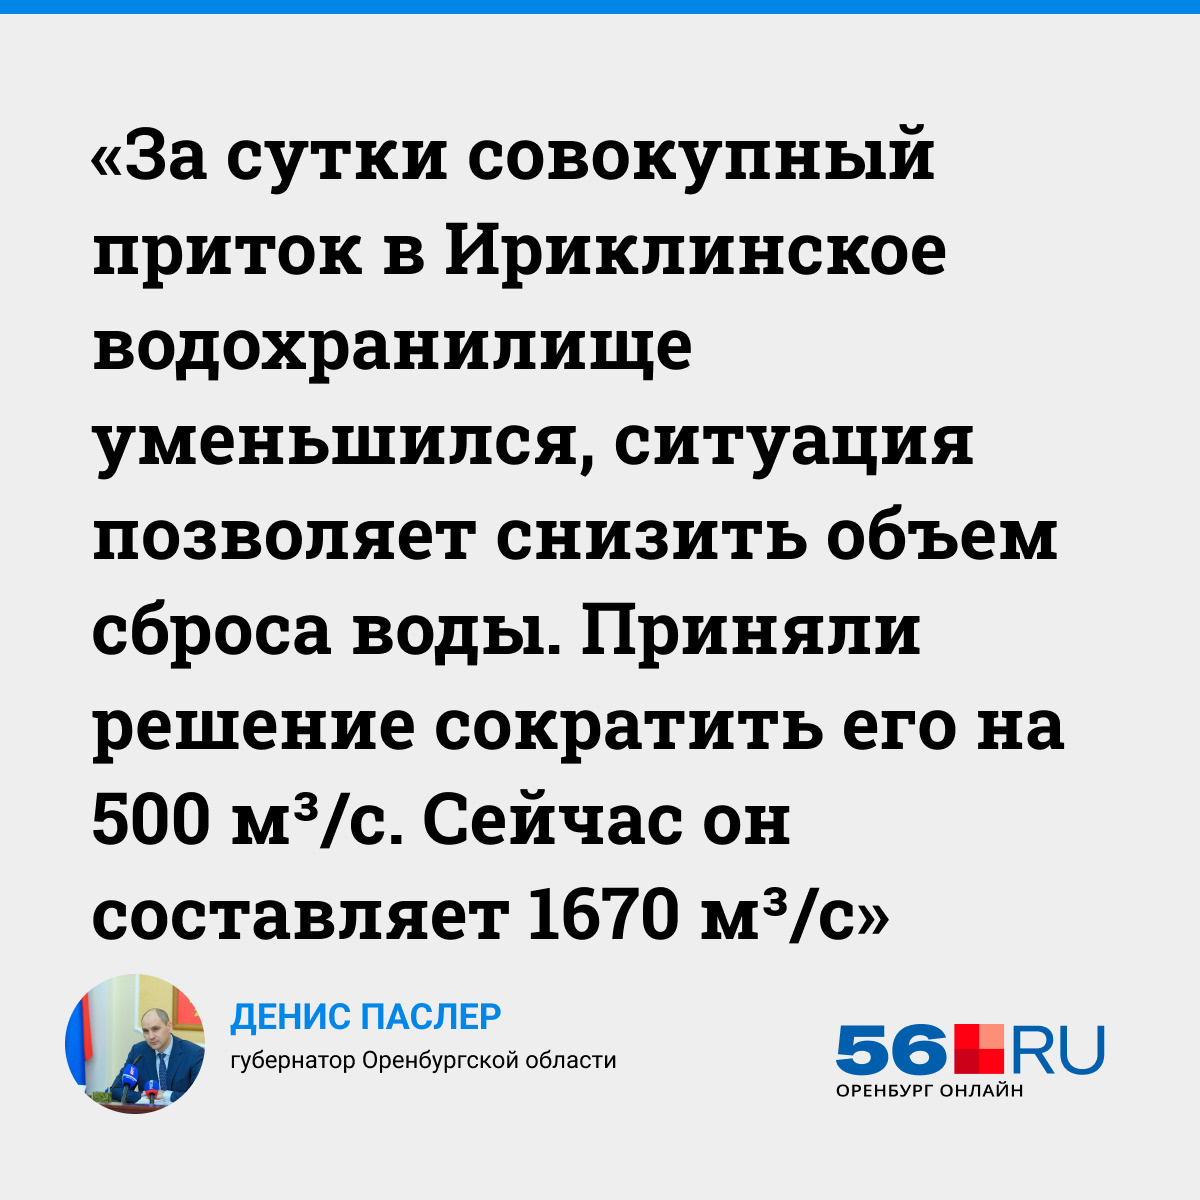 «За сутки Урал у Оренбурга прибавил еще 28 сантиметров»: что происходит в регионе, где идёт паводок